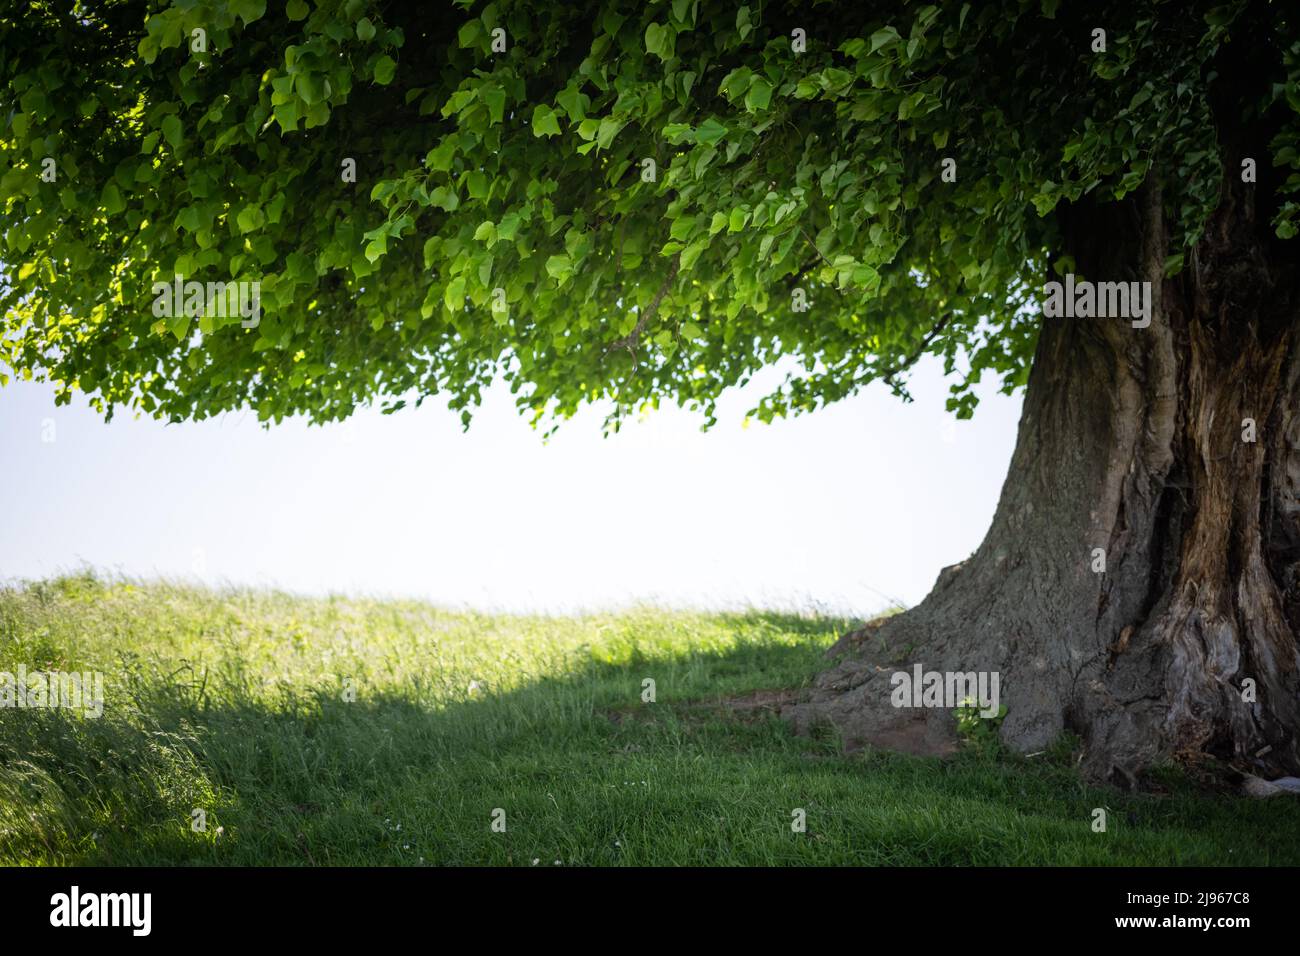 Alte Linden auf Sommerwiese. Große Baumkrone mit üppigem grünen Laub und dickem Stamm, der durch das Licht des Sonnenuntergangs leuchtet. Landschaftsfotografie Stockfoto